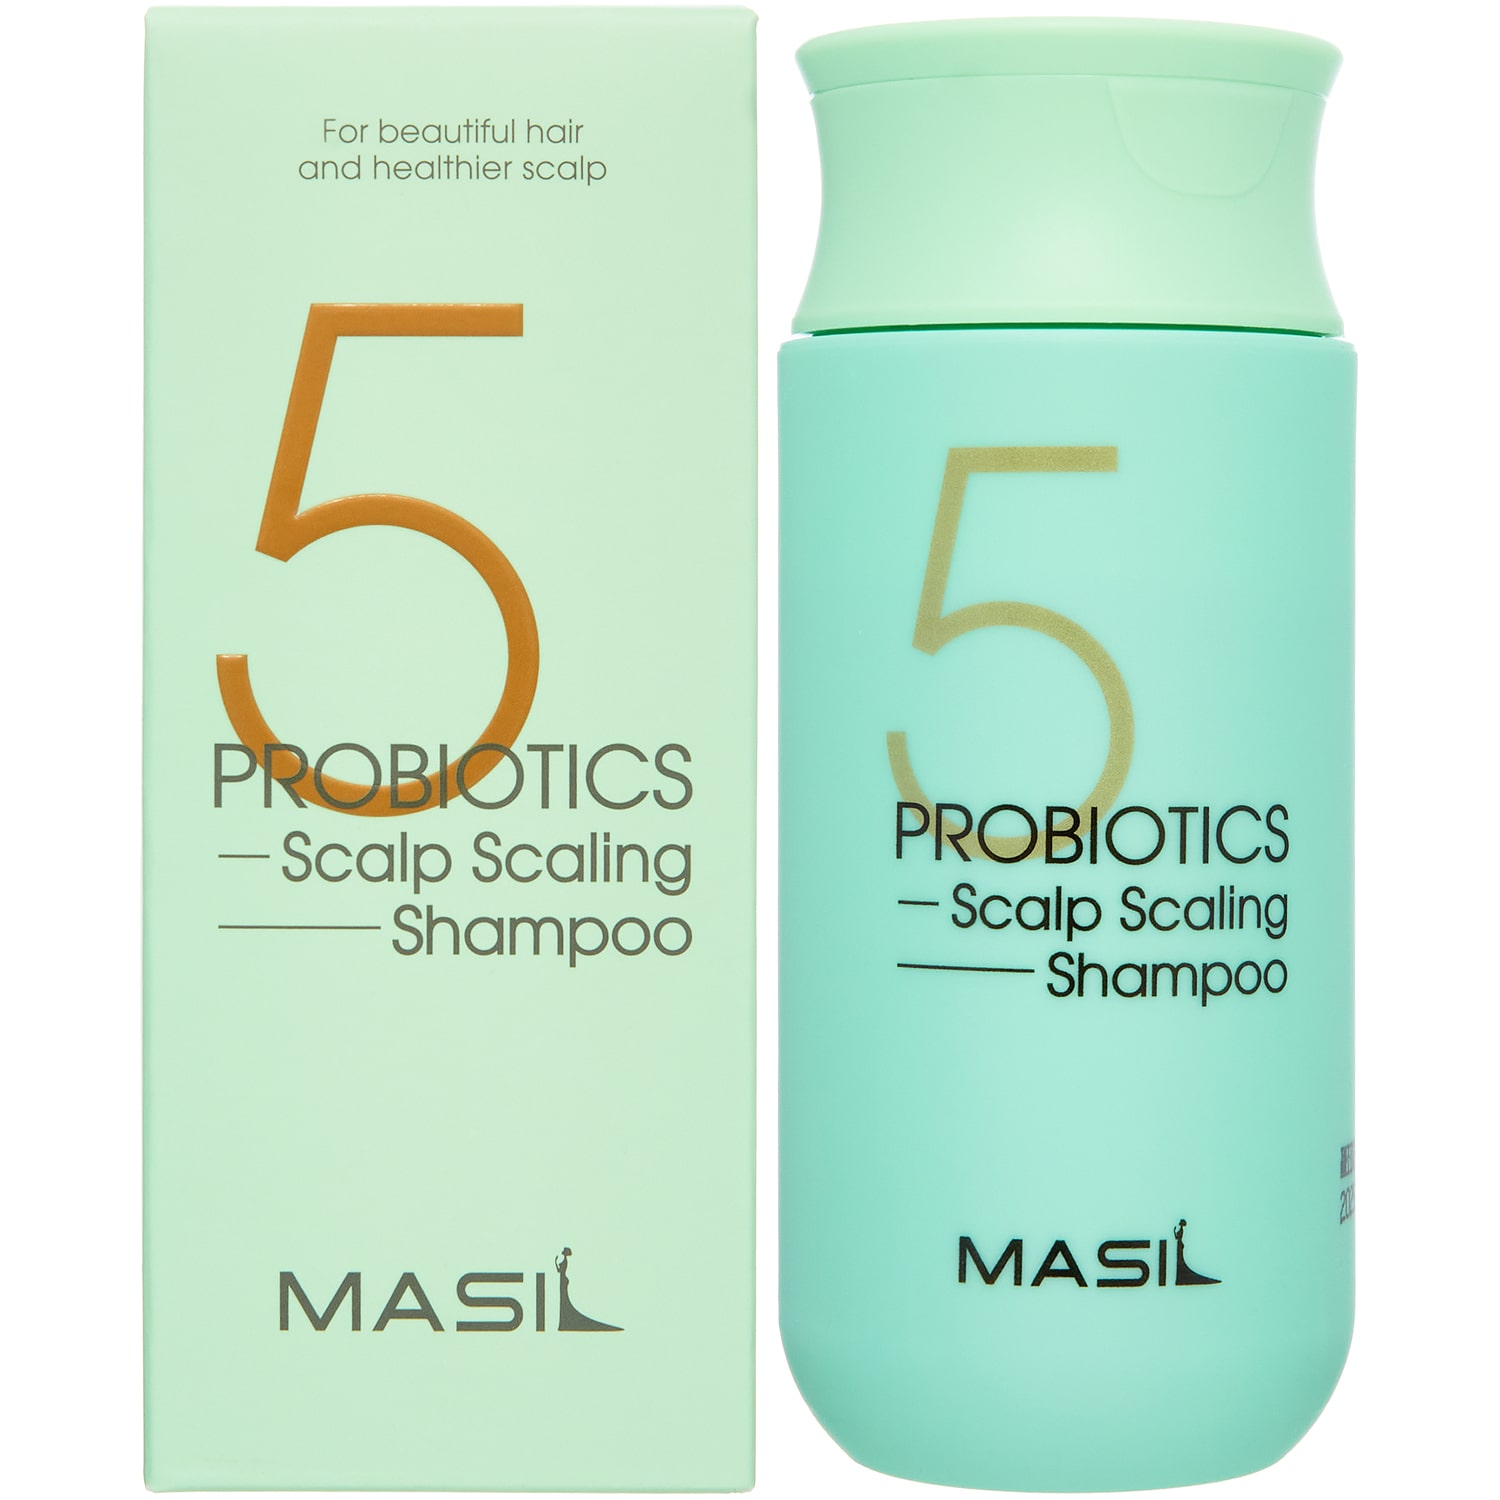 Masil Шампунь для глубокого очищения кожи головы Probiotics Scalp Scaling Shampoo, 150 мл (Masil, ) шампуни masil шампунь для глубокого очищения кожи головы